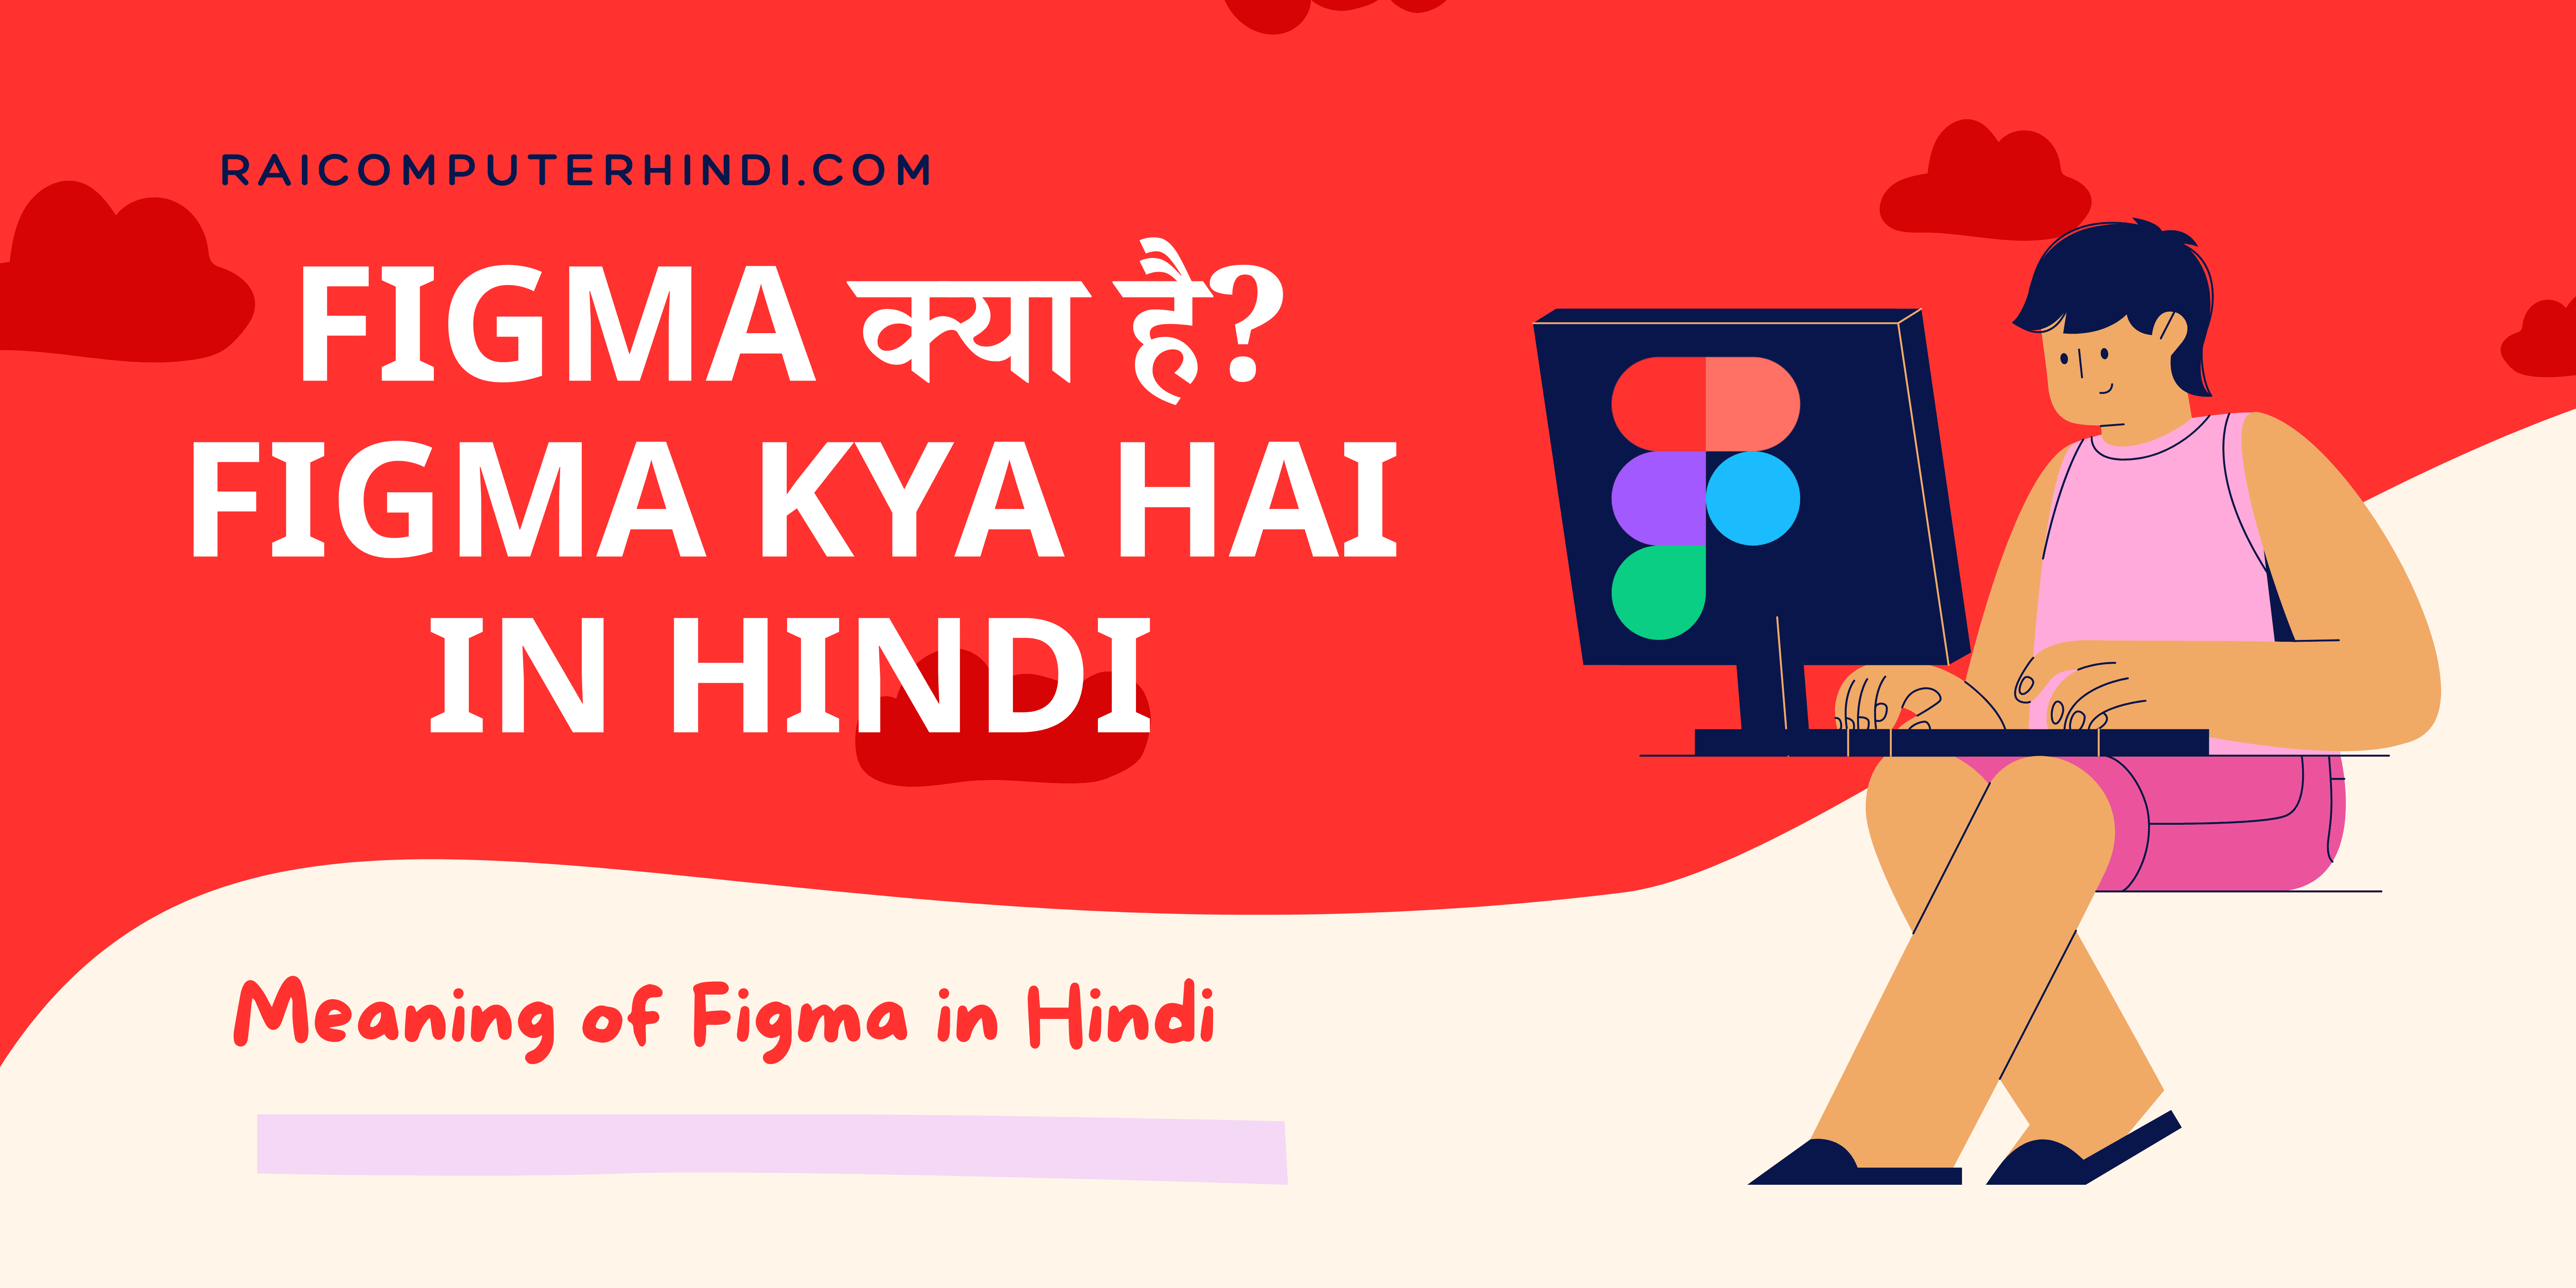 Figma kya hai in hindi